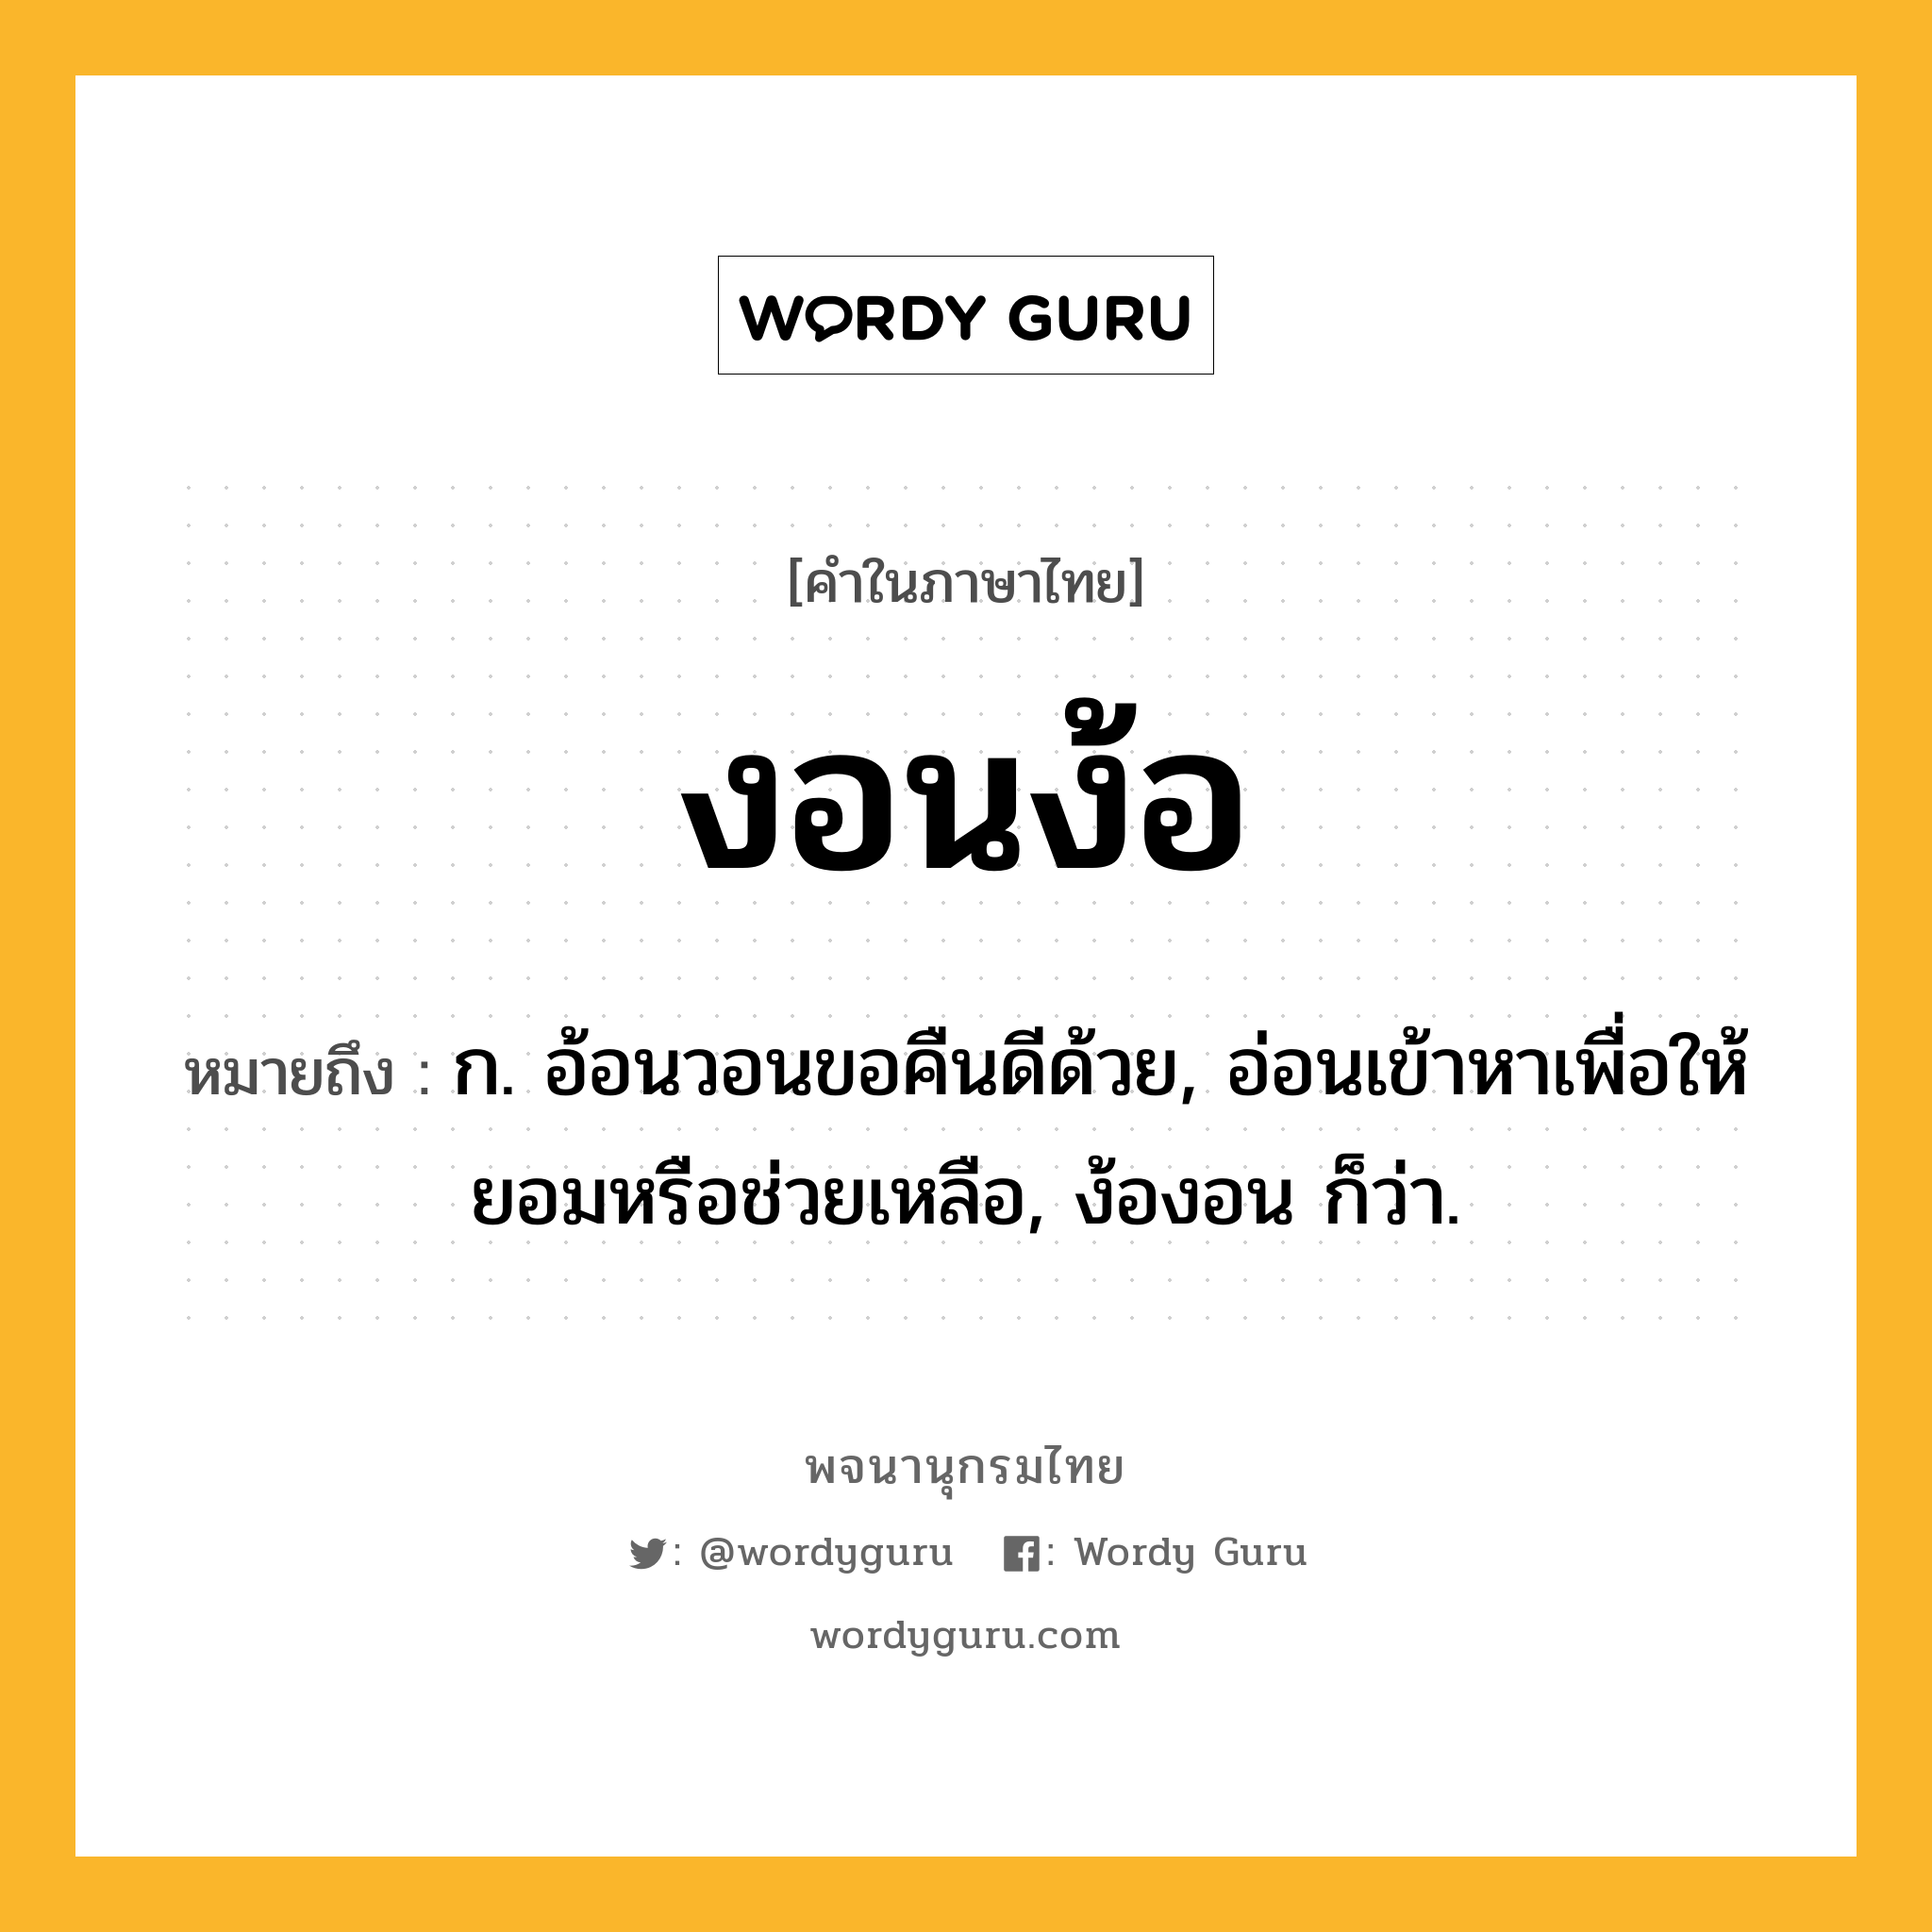 งอนง้อ ความหมาย หมายถึงอะไร?, คำในภาษาไทย งอนง้อ หมายถึง ก. อ้อนวอนขอคืนดีด้วย, อ่อนเข้าหาเพื่อให้ยอมหรือช่วยเหลือ, ง้องอน ก็ว่า.